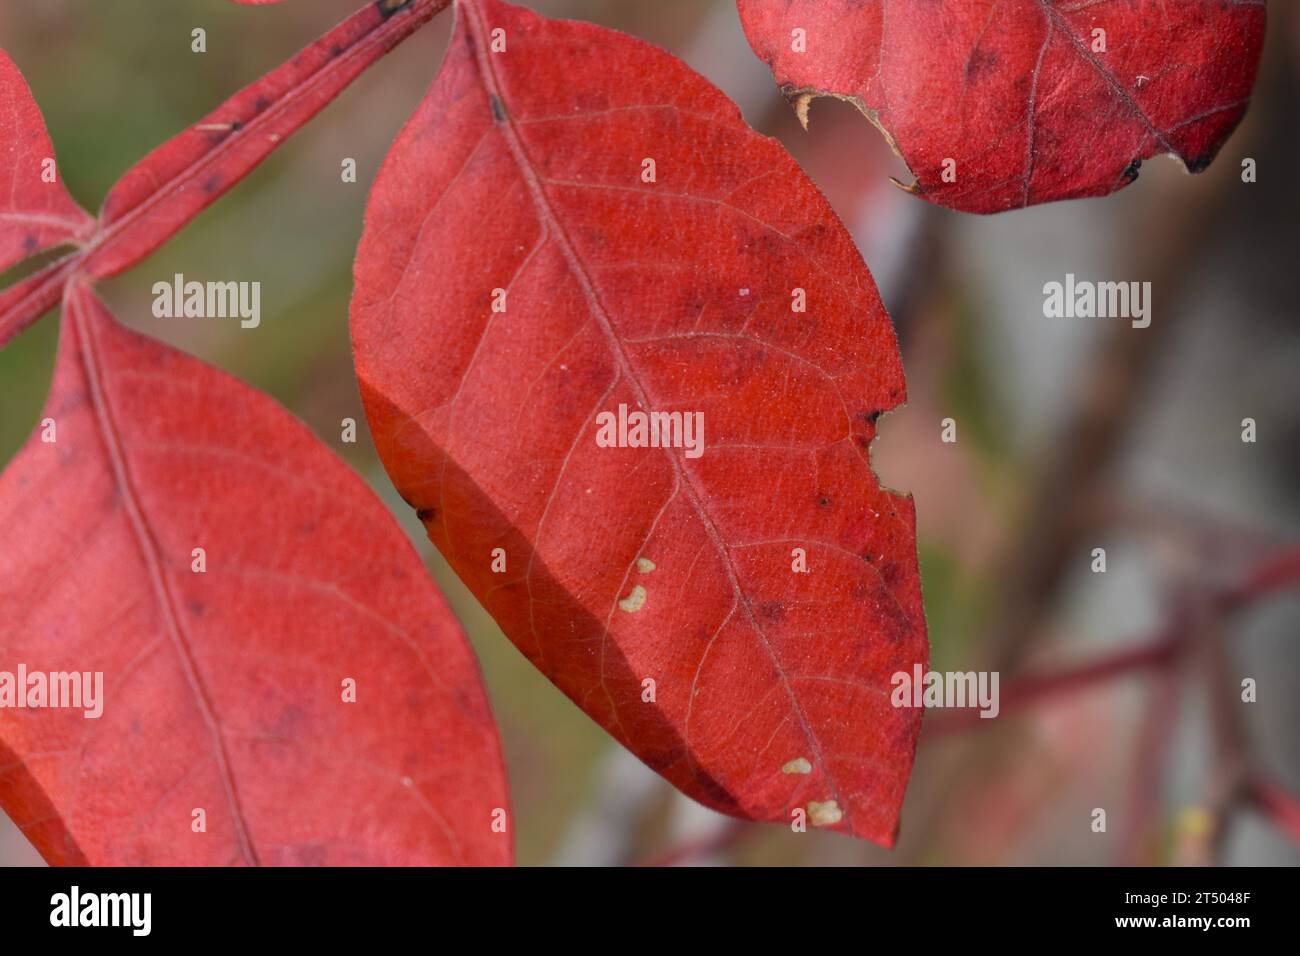 Eine Nahaufnahme der Blätter auf einem Sumak, oder Sumach, Busch, die im Herbst des Jahres eine hellrote Farbe haben. Gattung-Rhus, Familie-Anacardiaceae Stockfoto